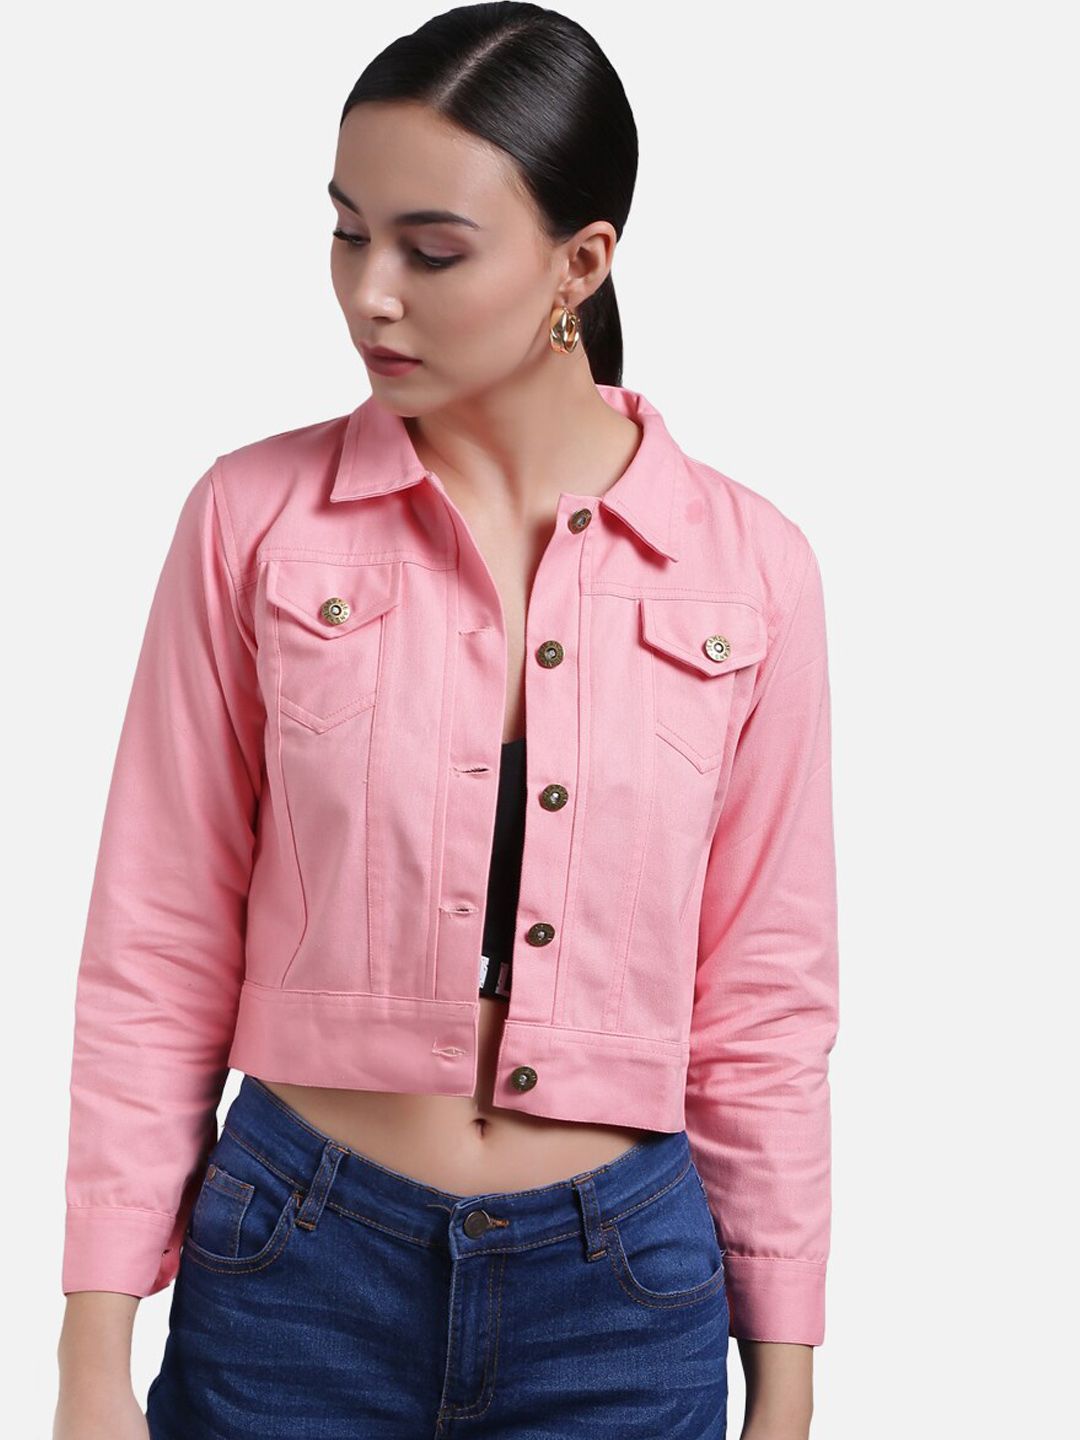 FurryFlair Women Pink Crop Denim Jacket Price in India